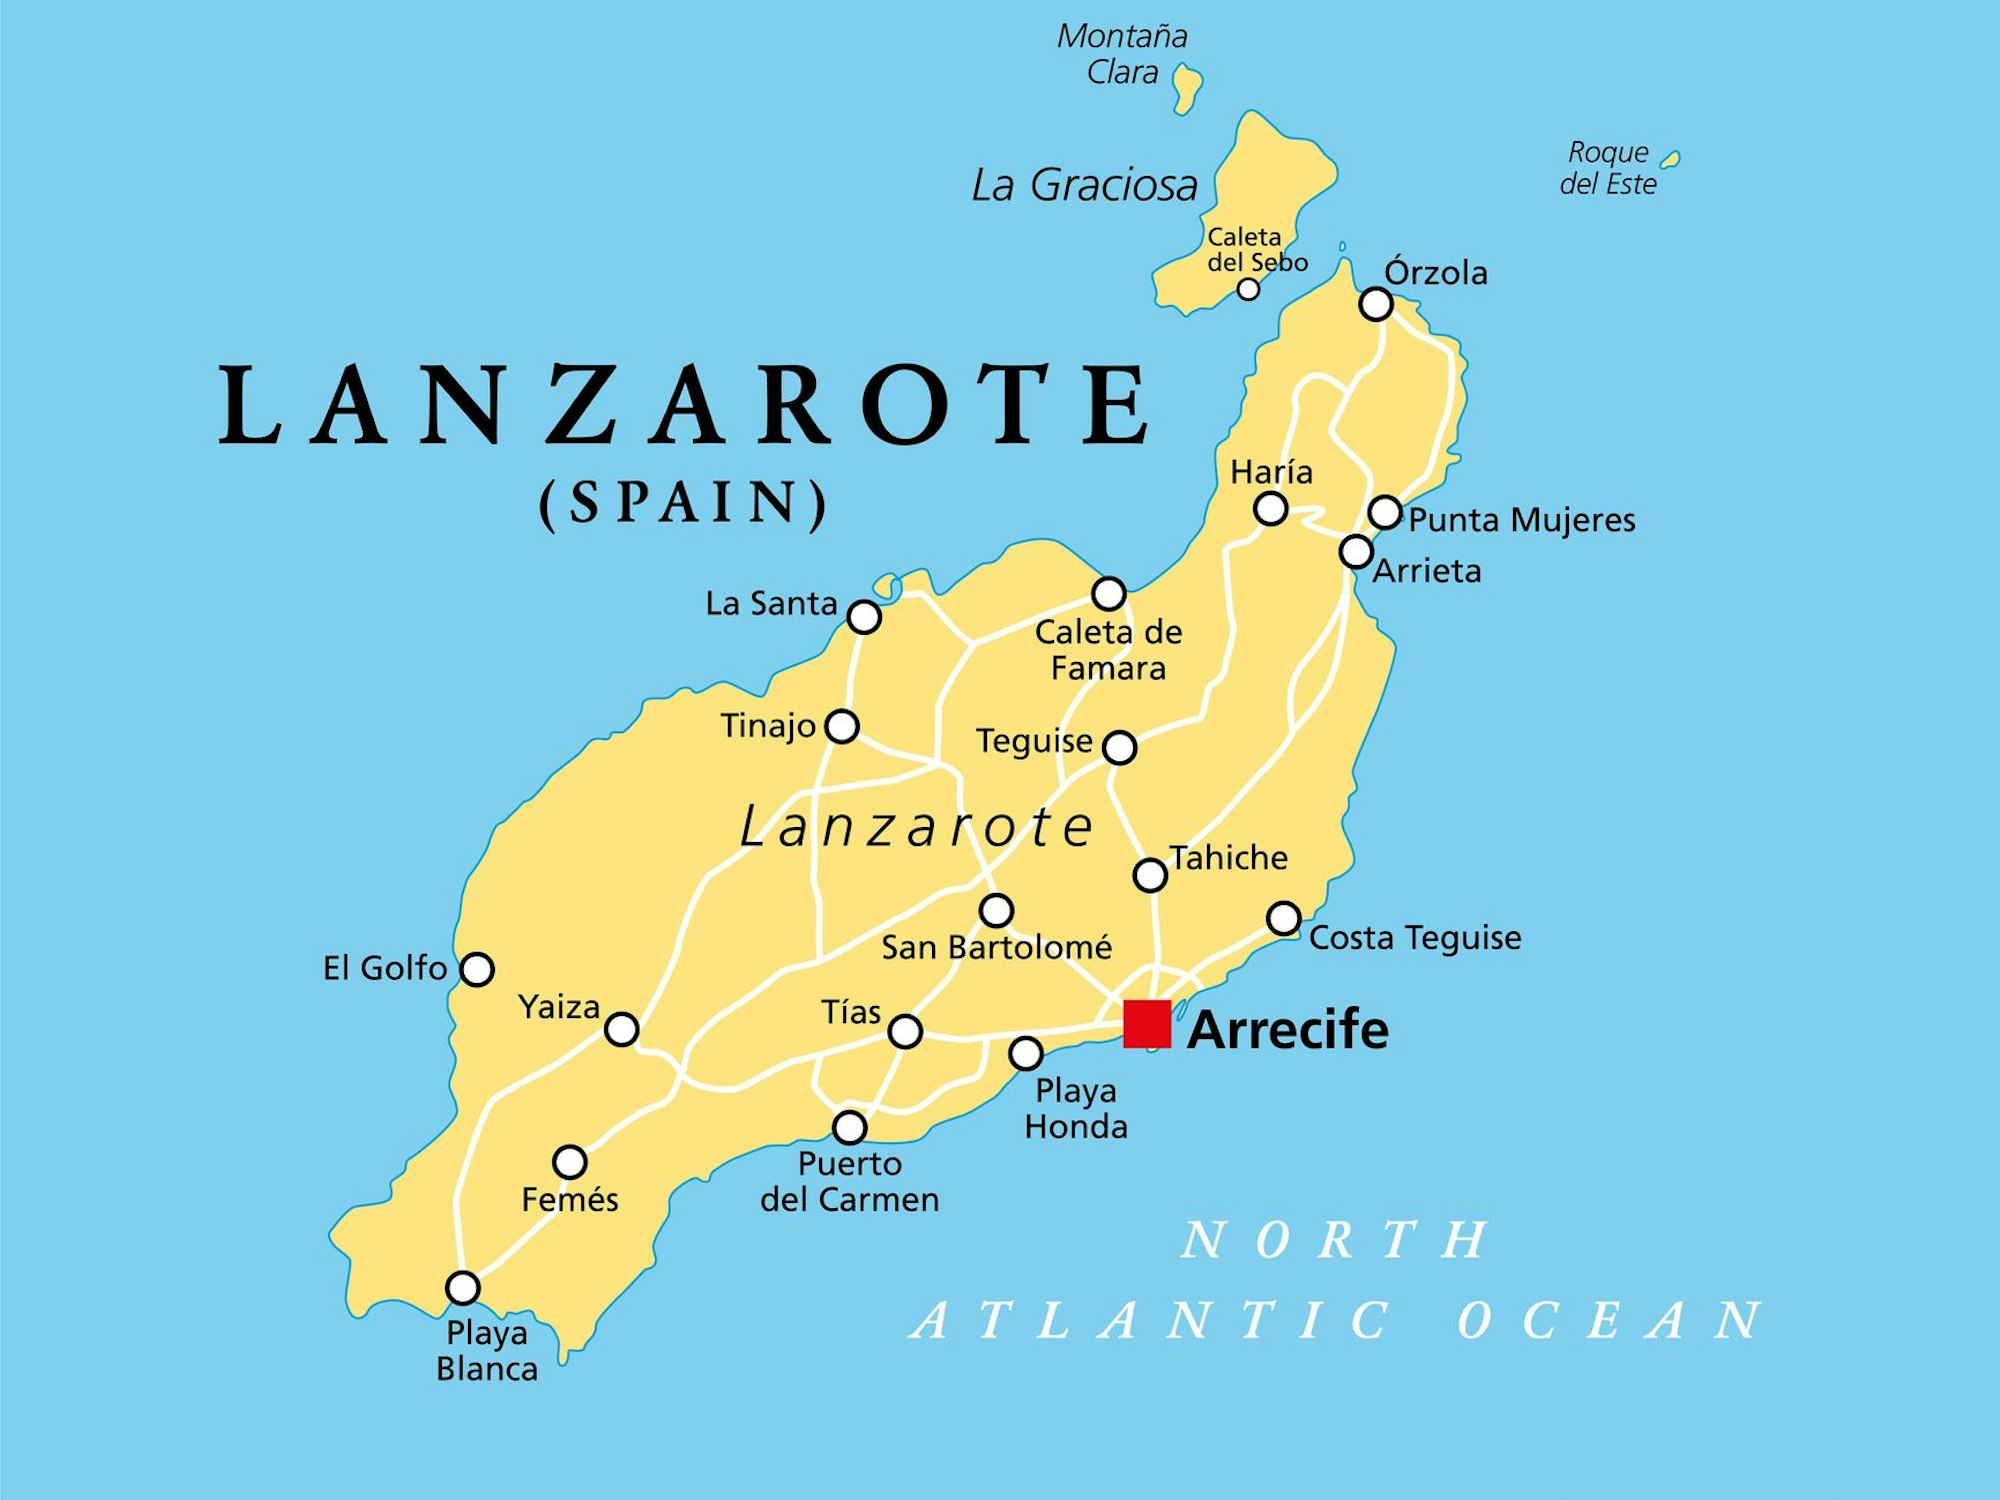 Karte von Lanzarote mit wichtigen Städten.